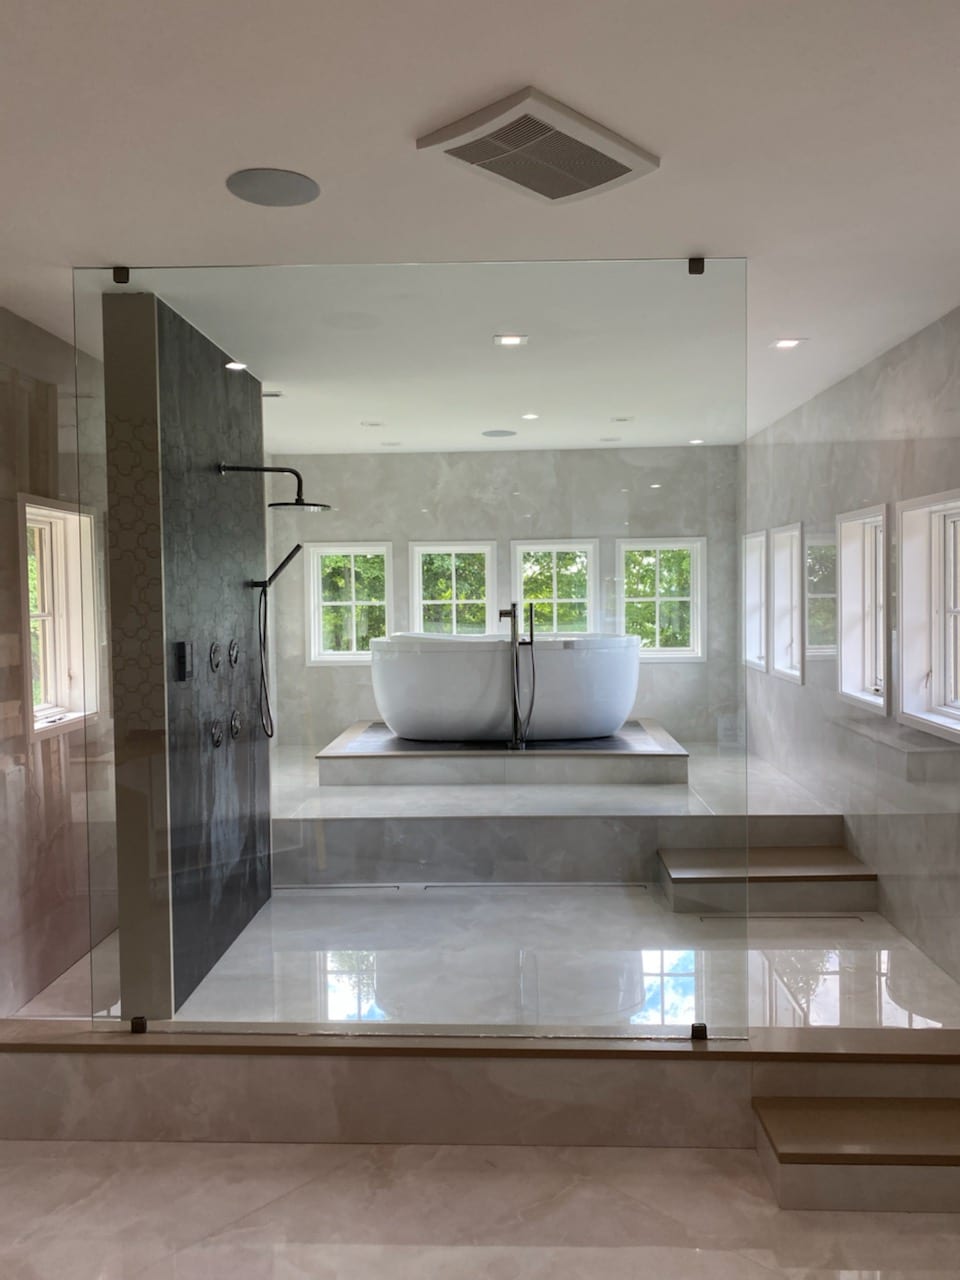 Floor to Ceiling Panel Glass Enclosure - Avon, CT